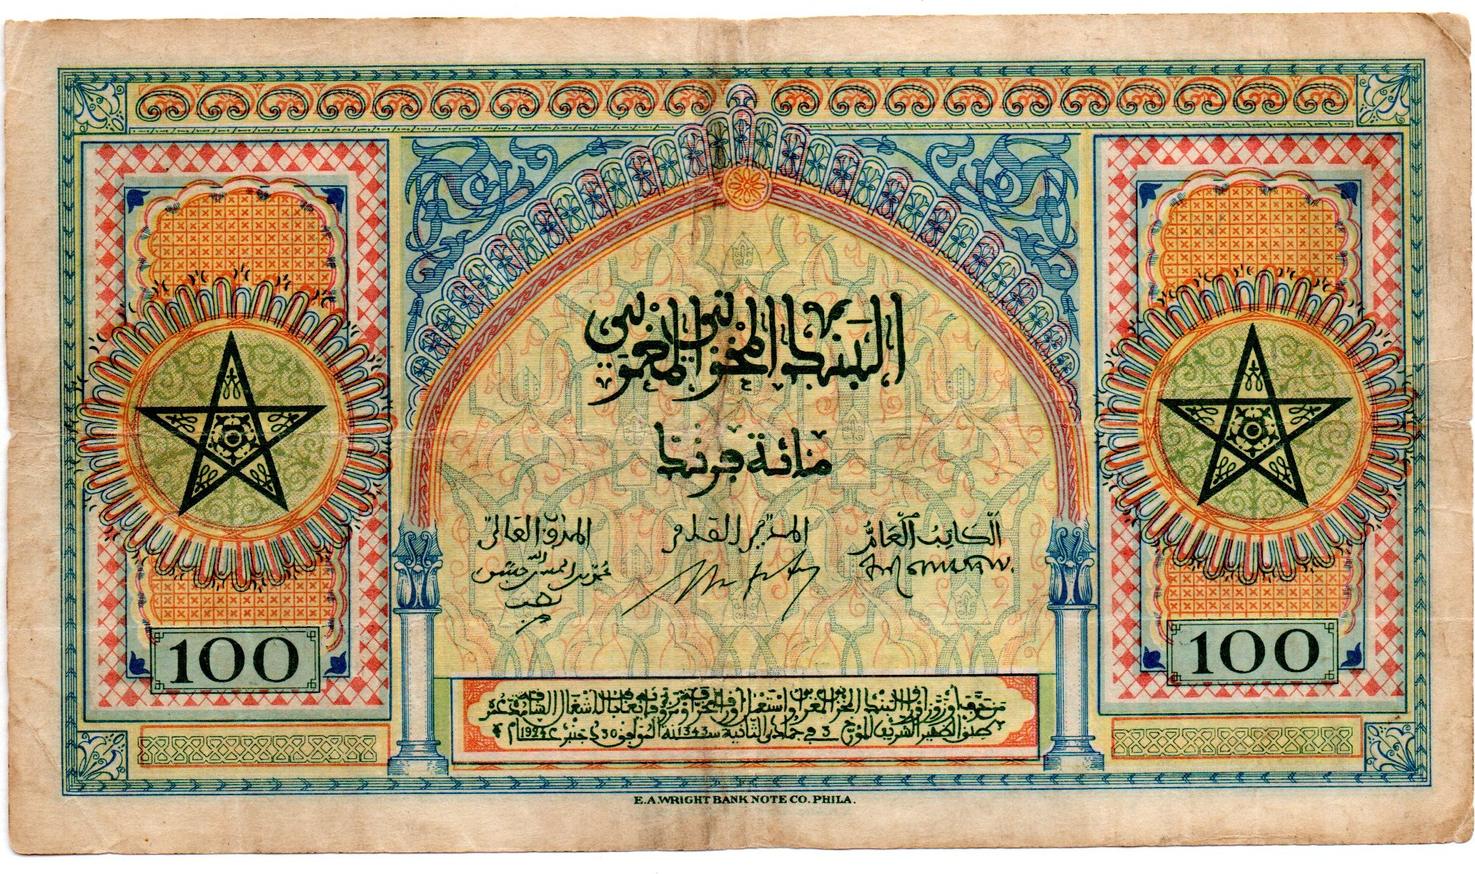 валюта марокко